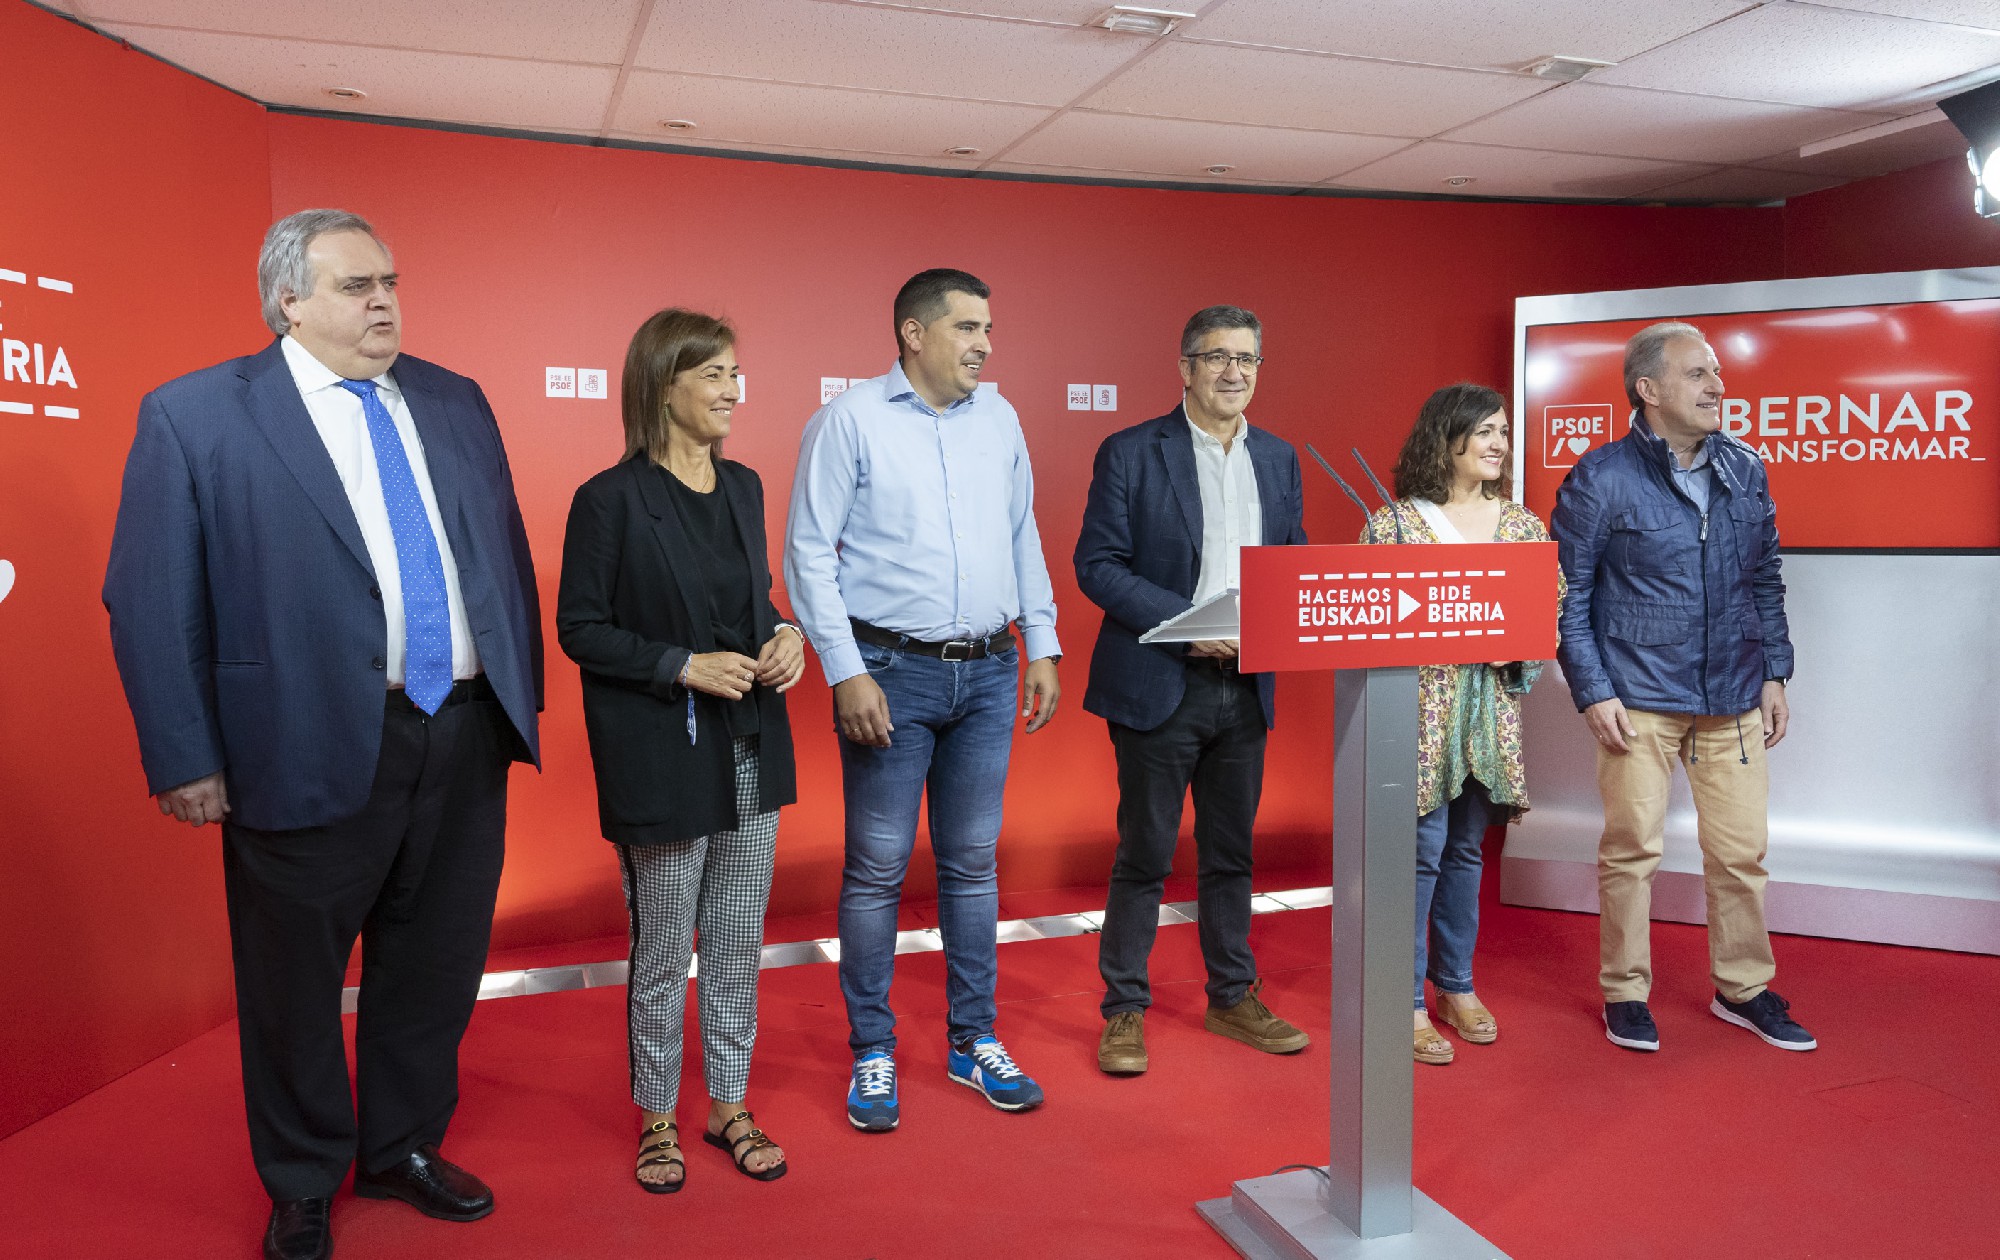 Rueda de prensa de los diputados y senadores socialistas vascos | Foto: Socialistas Vascos